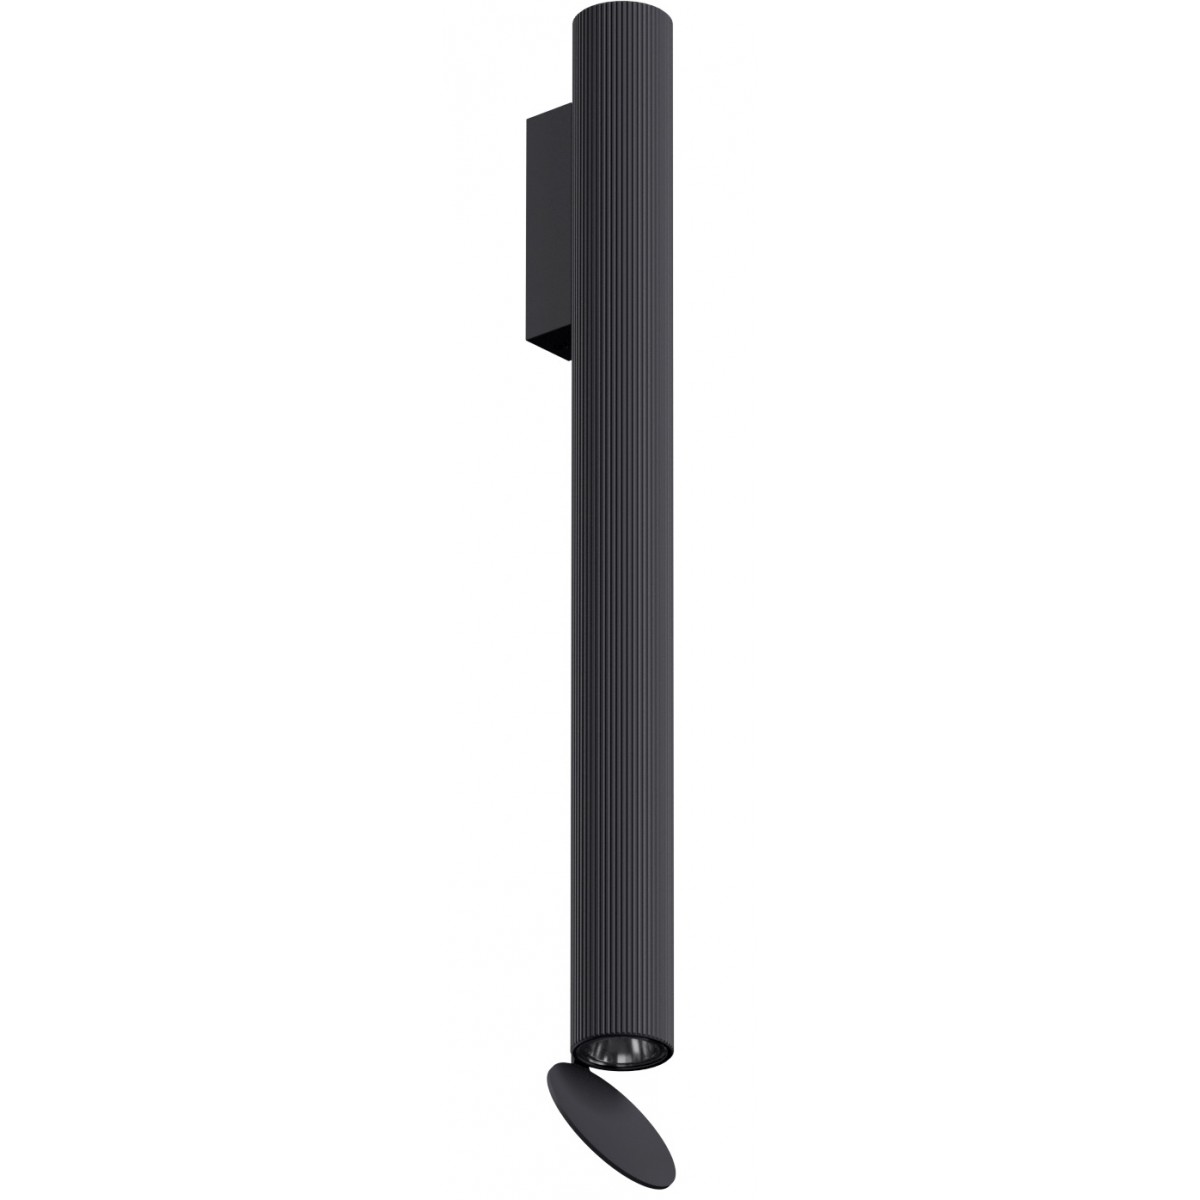 Flauta H50cm – Riga, black